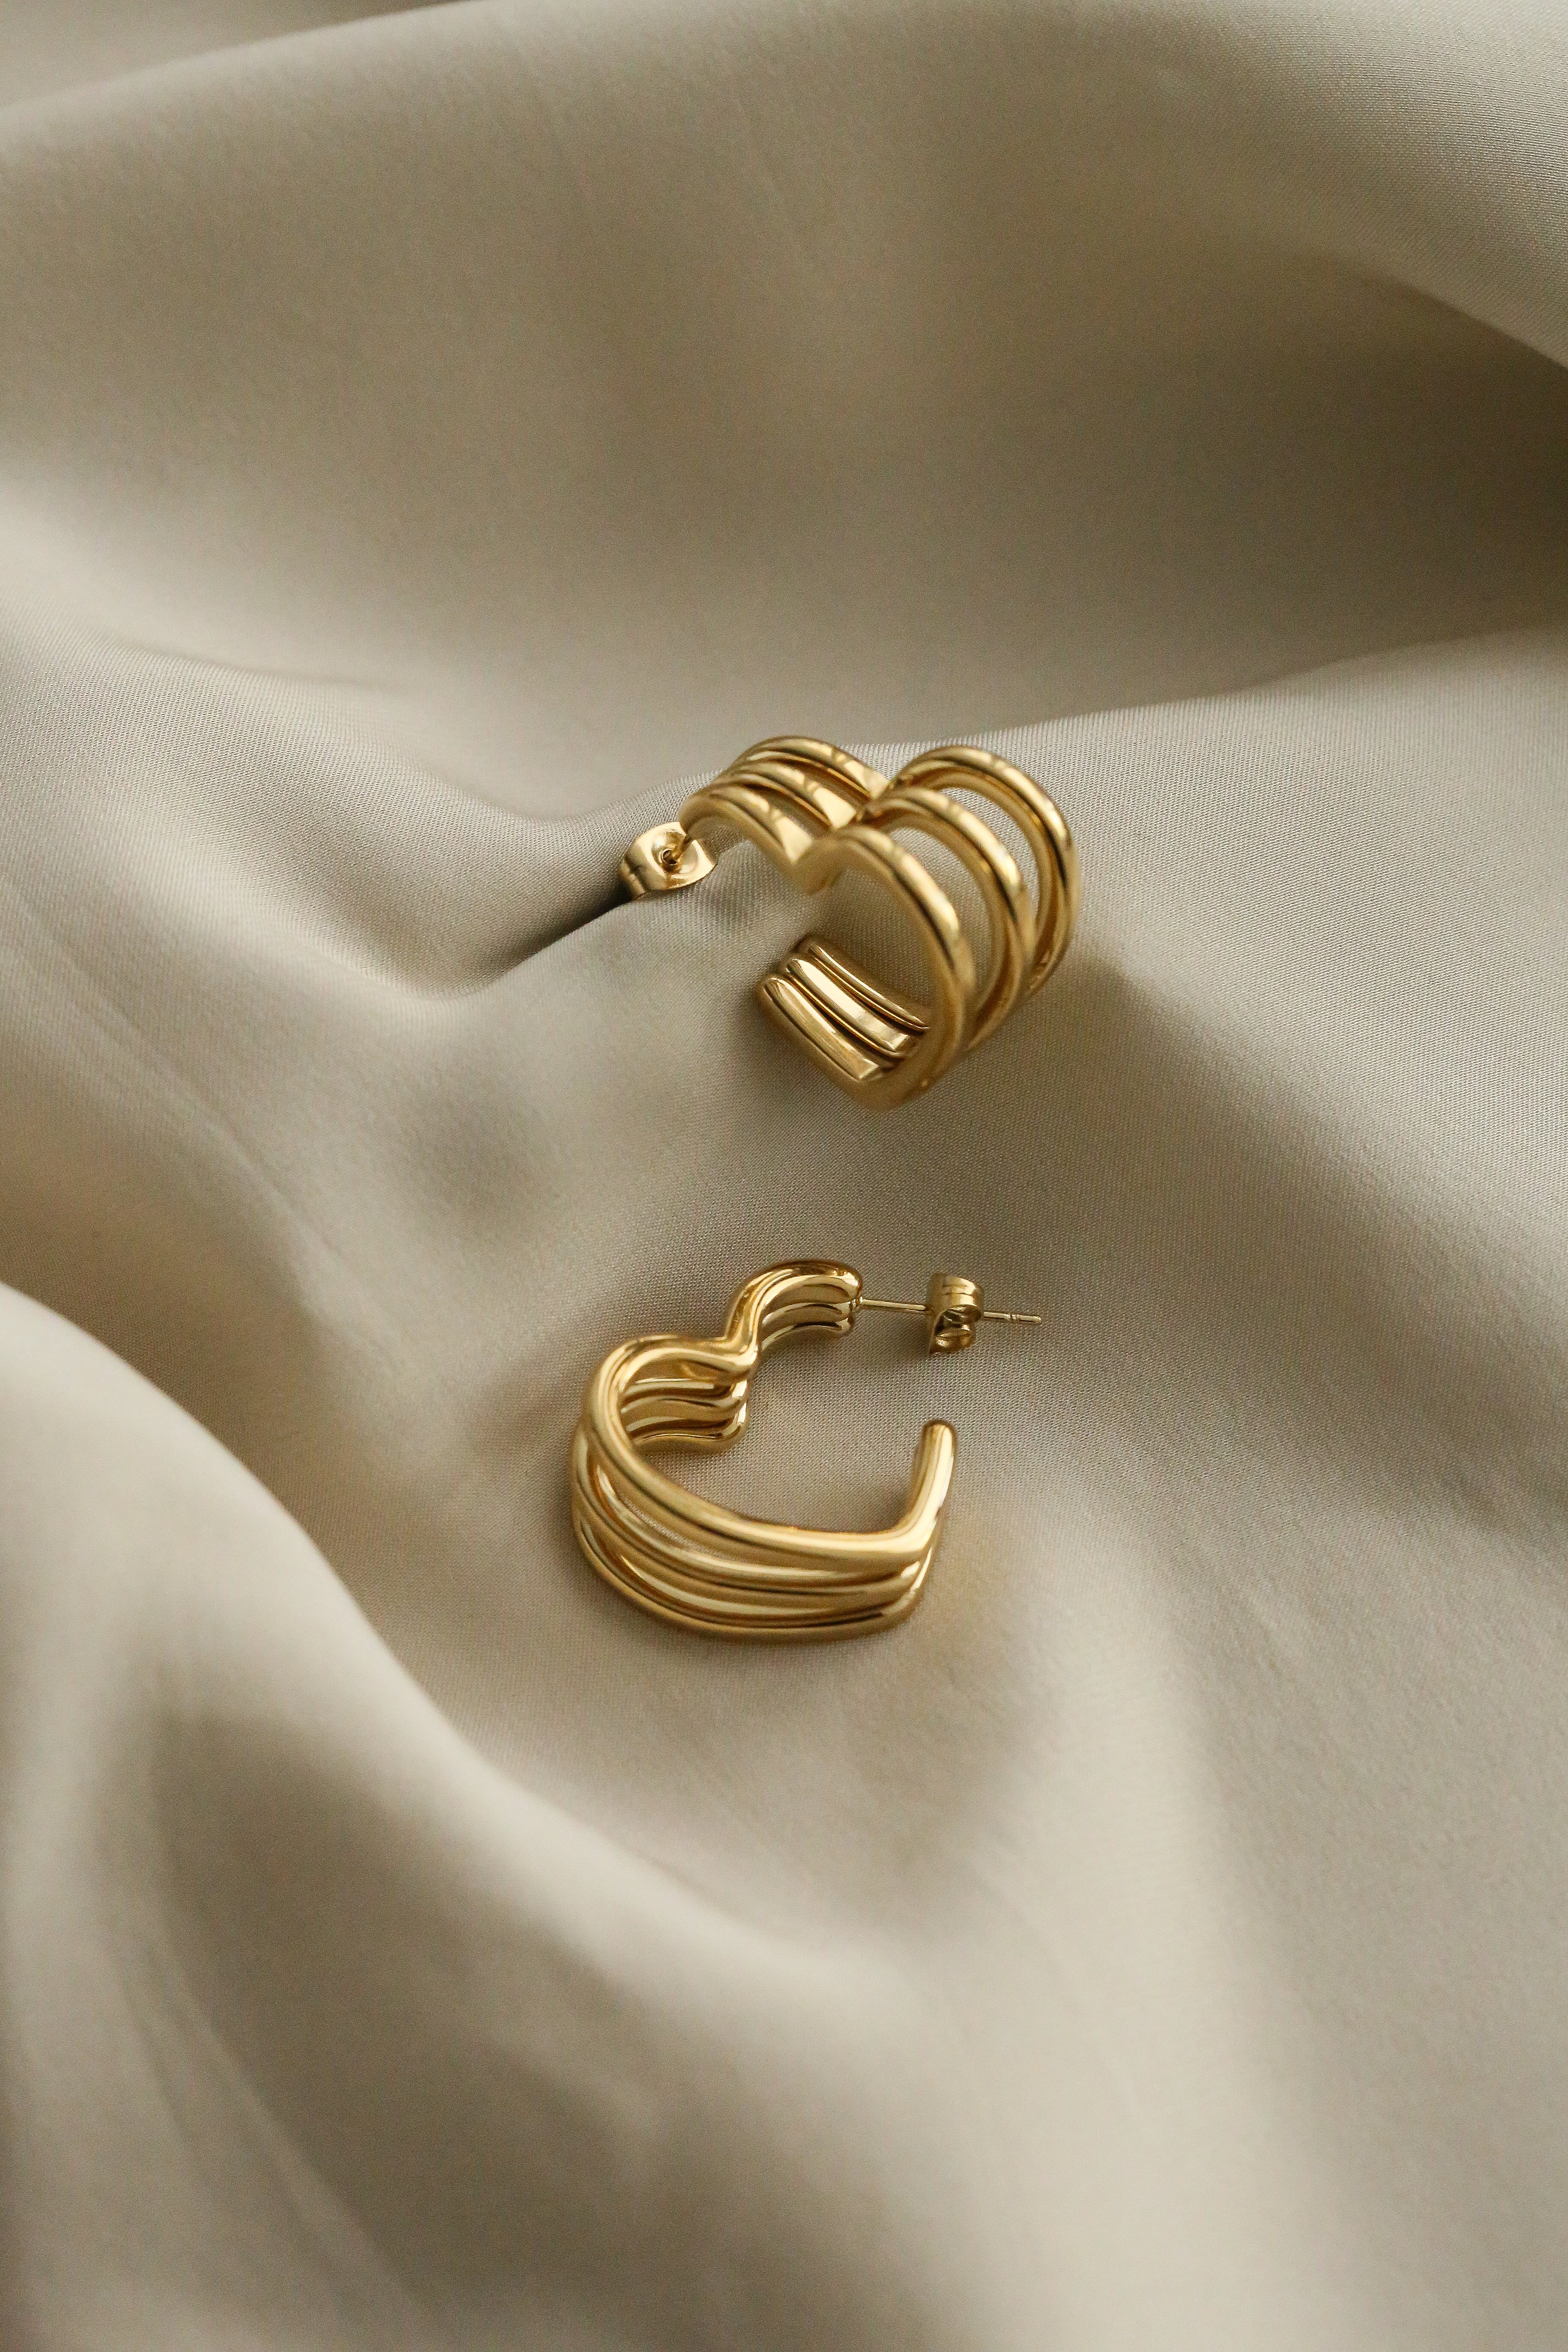 Rachel Hoops - Boutique Minimaliste has waterproof, durable, elegant and vintage inspired jewelry